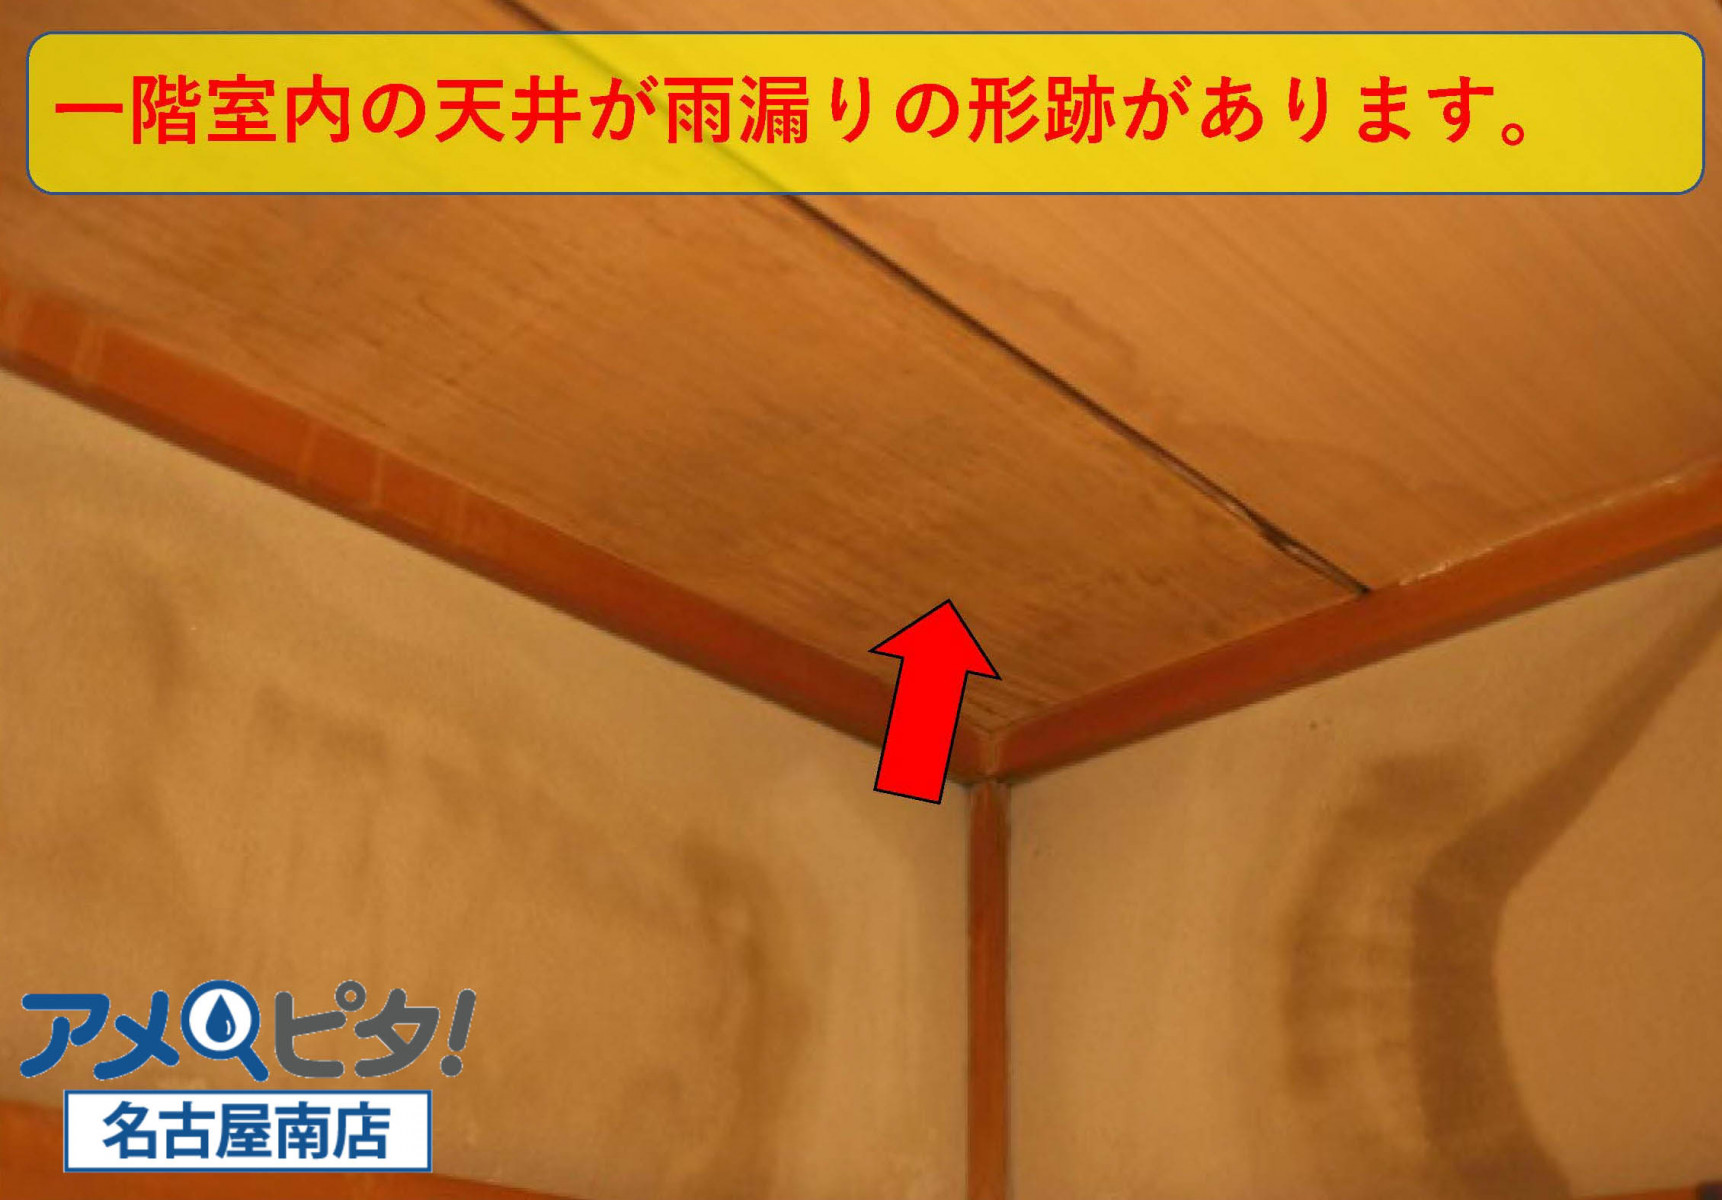 一回室内の天井と内壁に雨漏りの跡